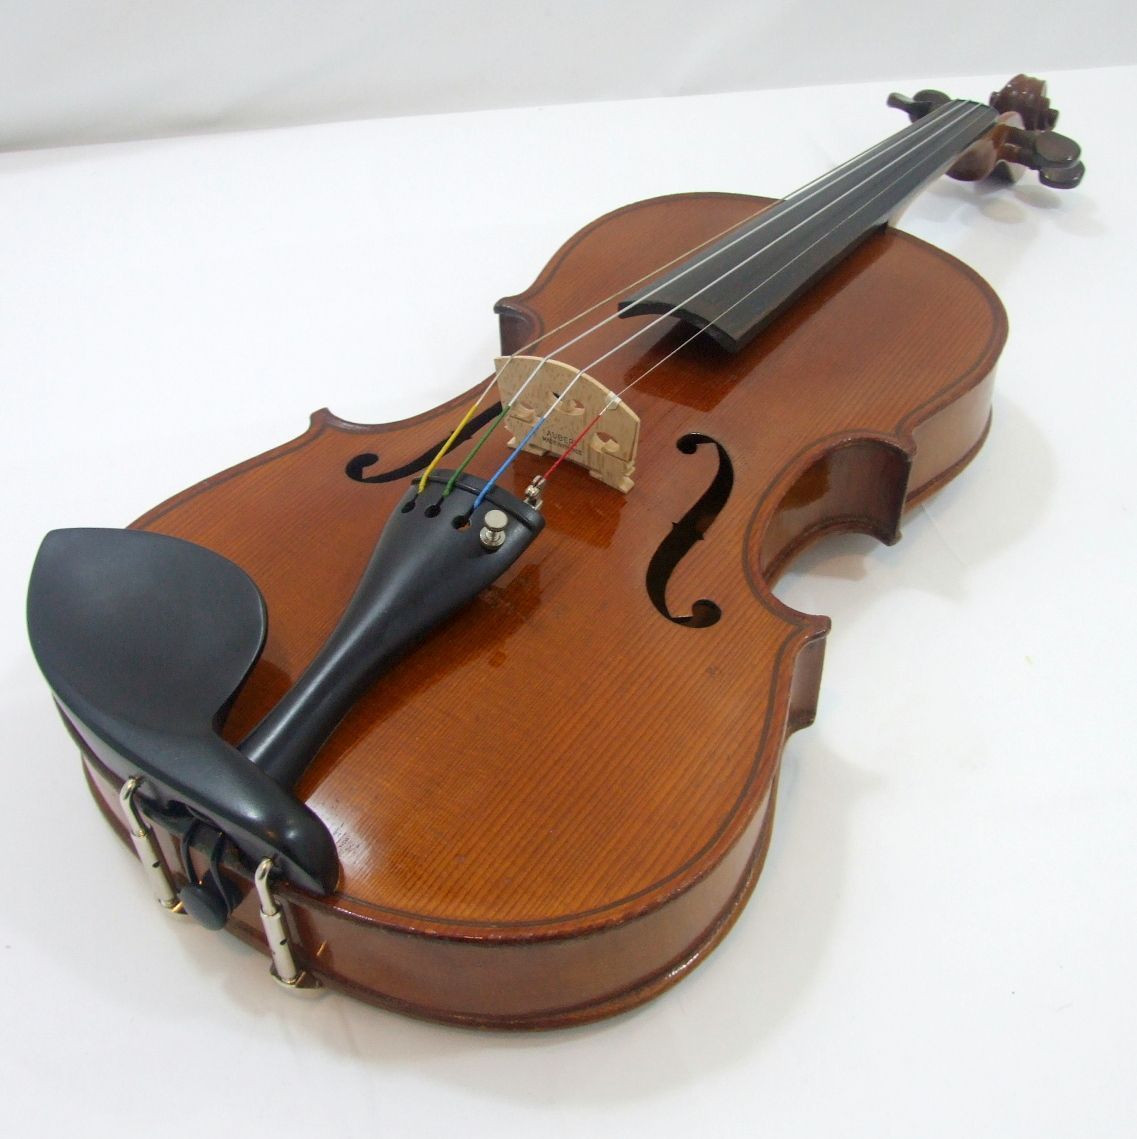 Antique FRENCH Violin 4/4 violon circa 1920 branded JTL labelled guadagnini